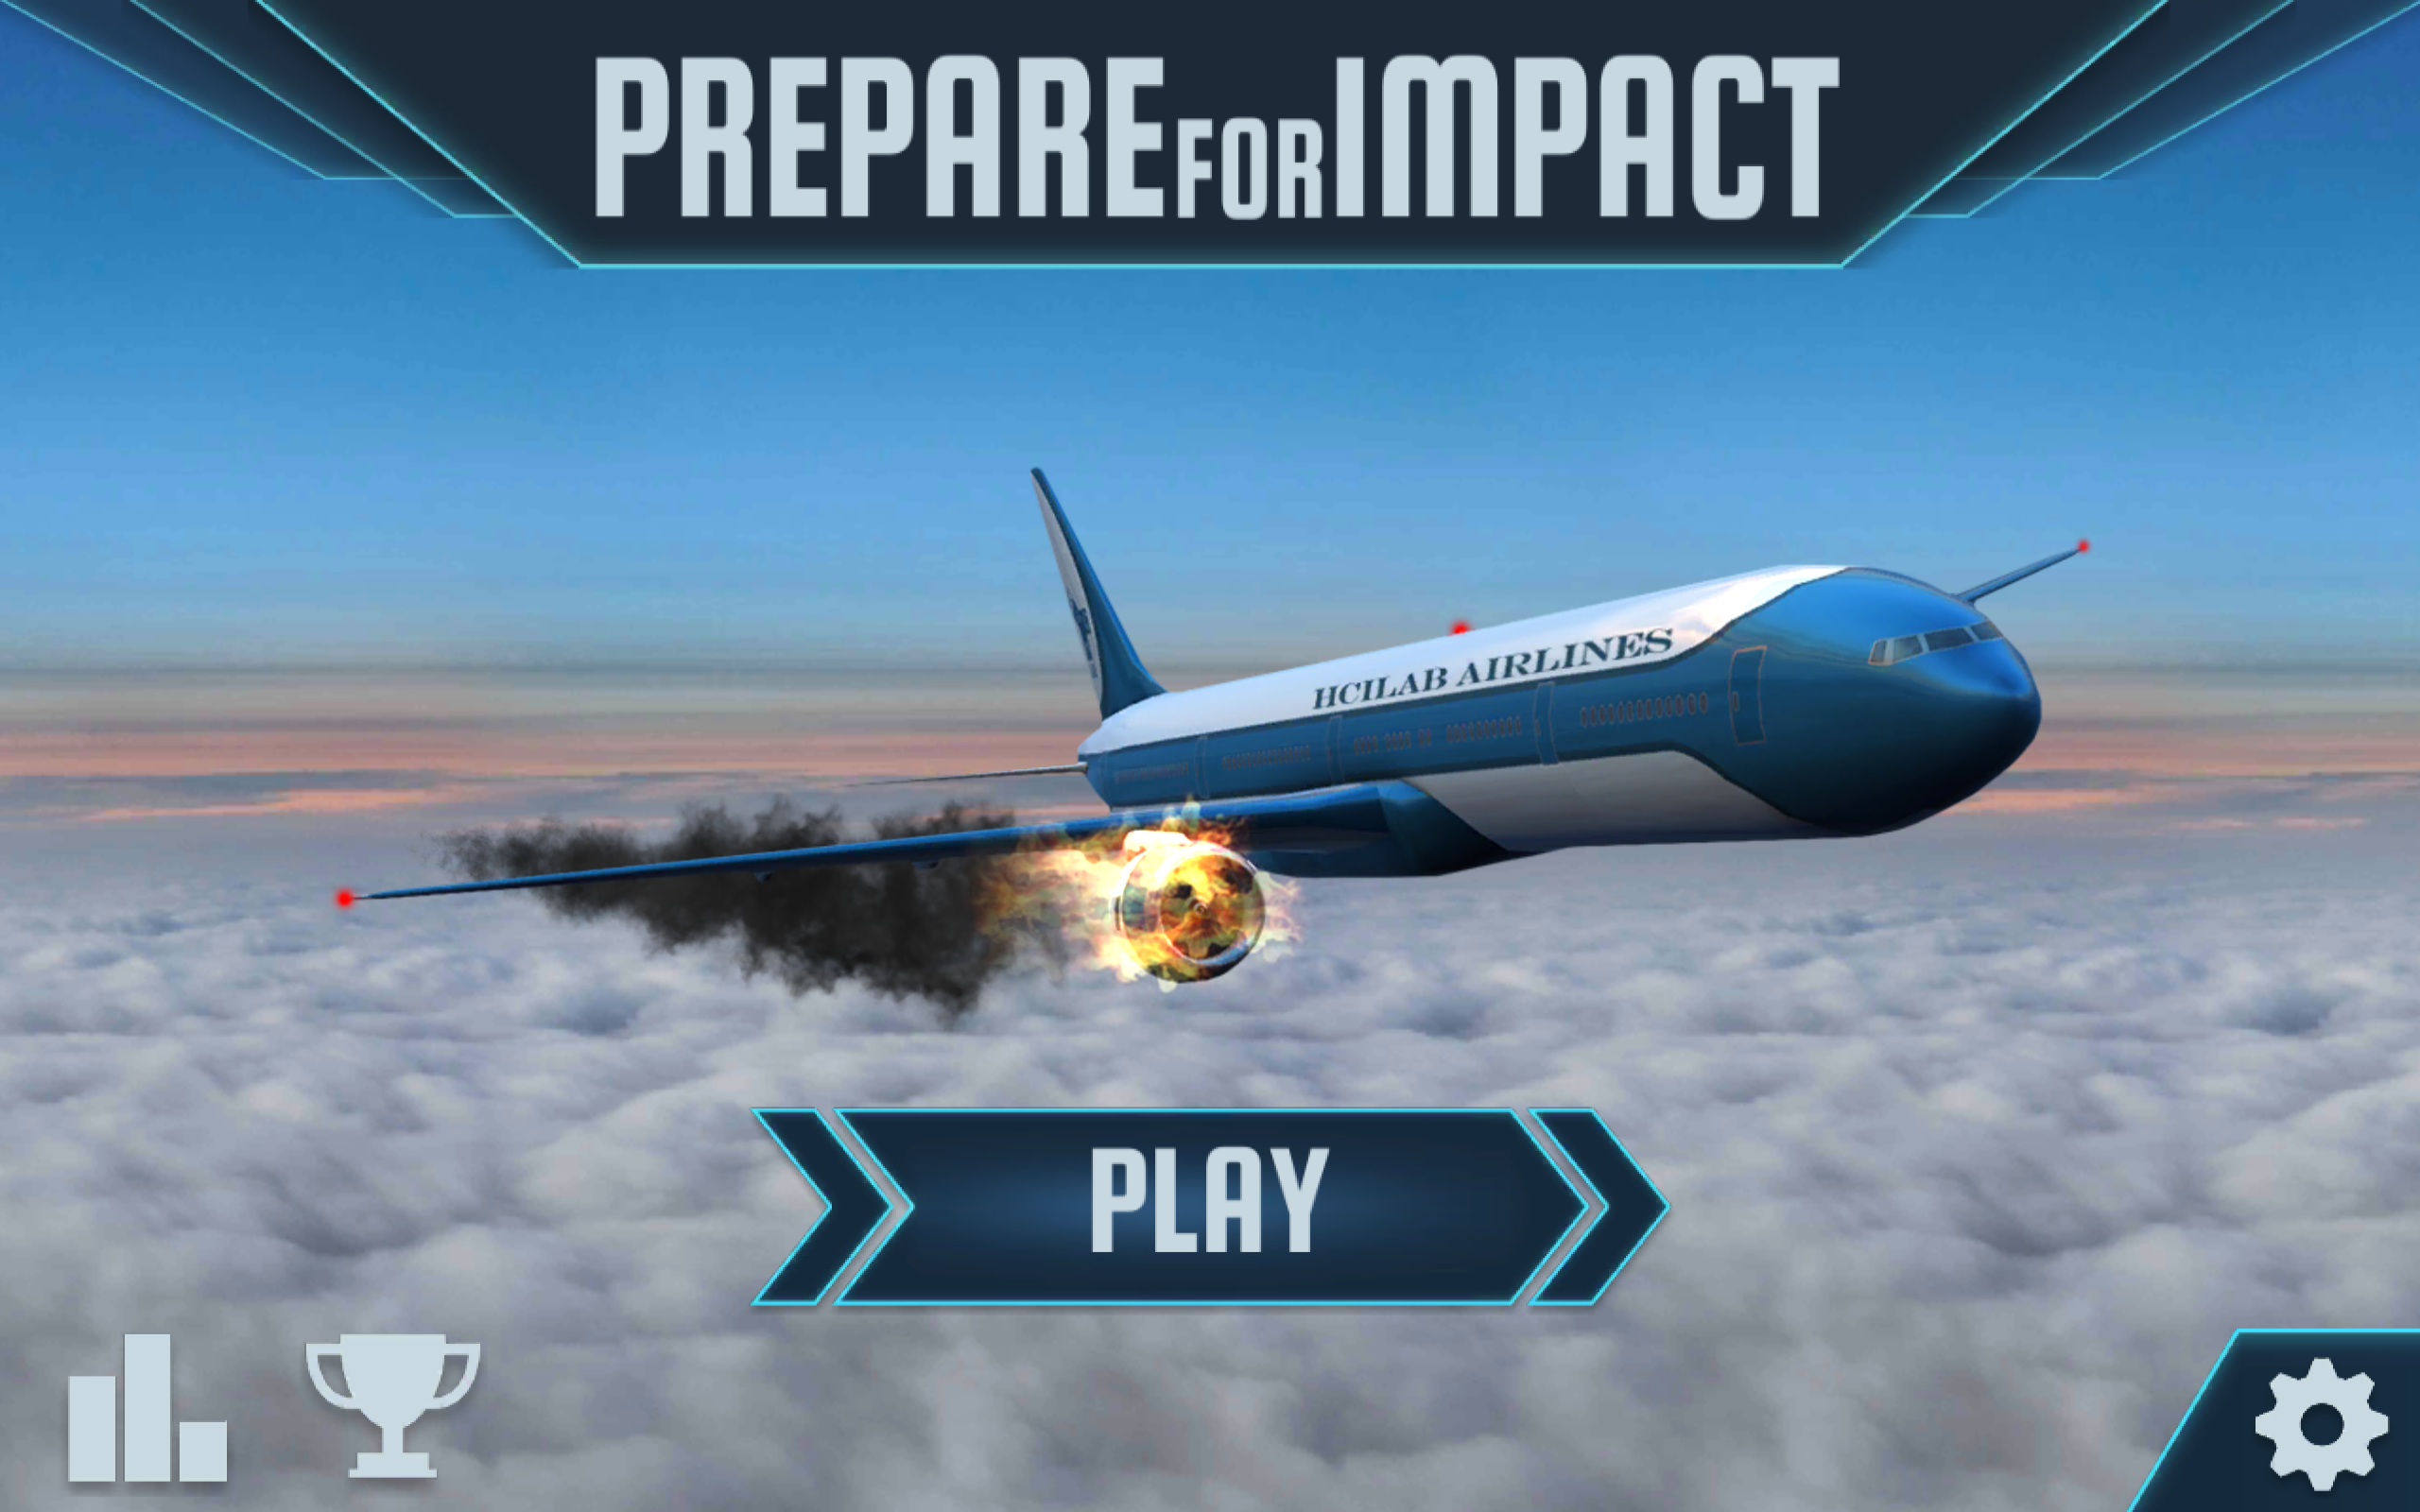 模拟游戏《prepare for impact》1.8.1更新了什么